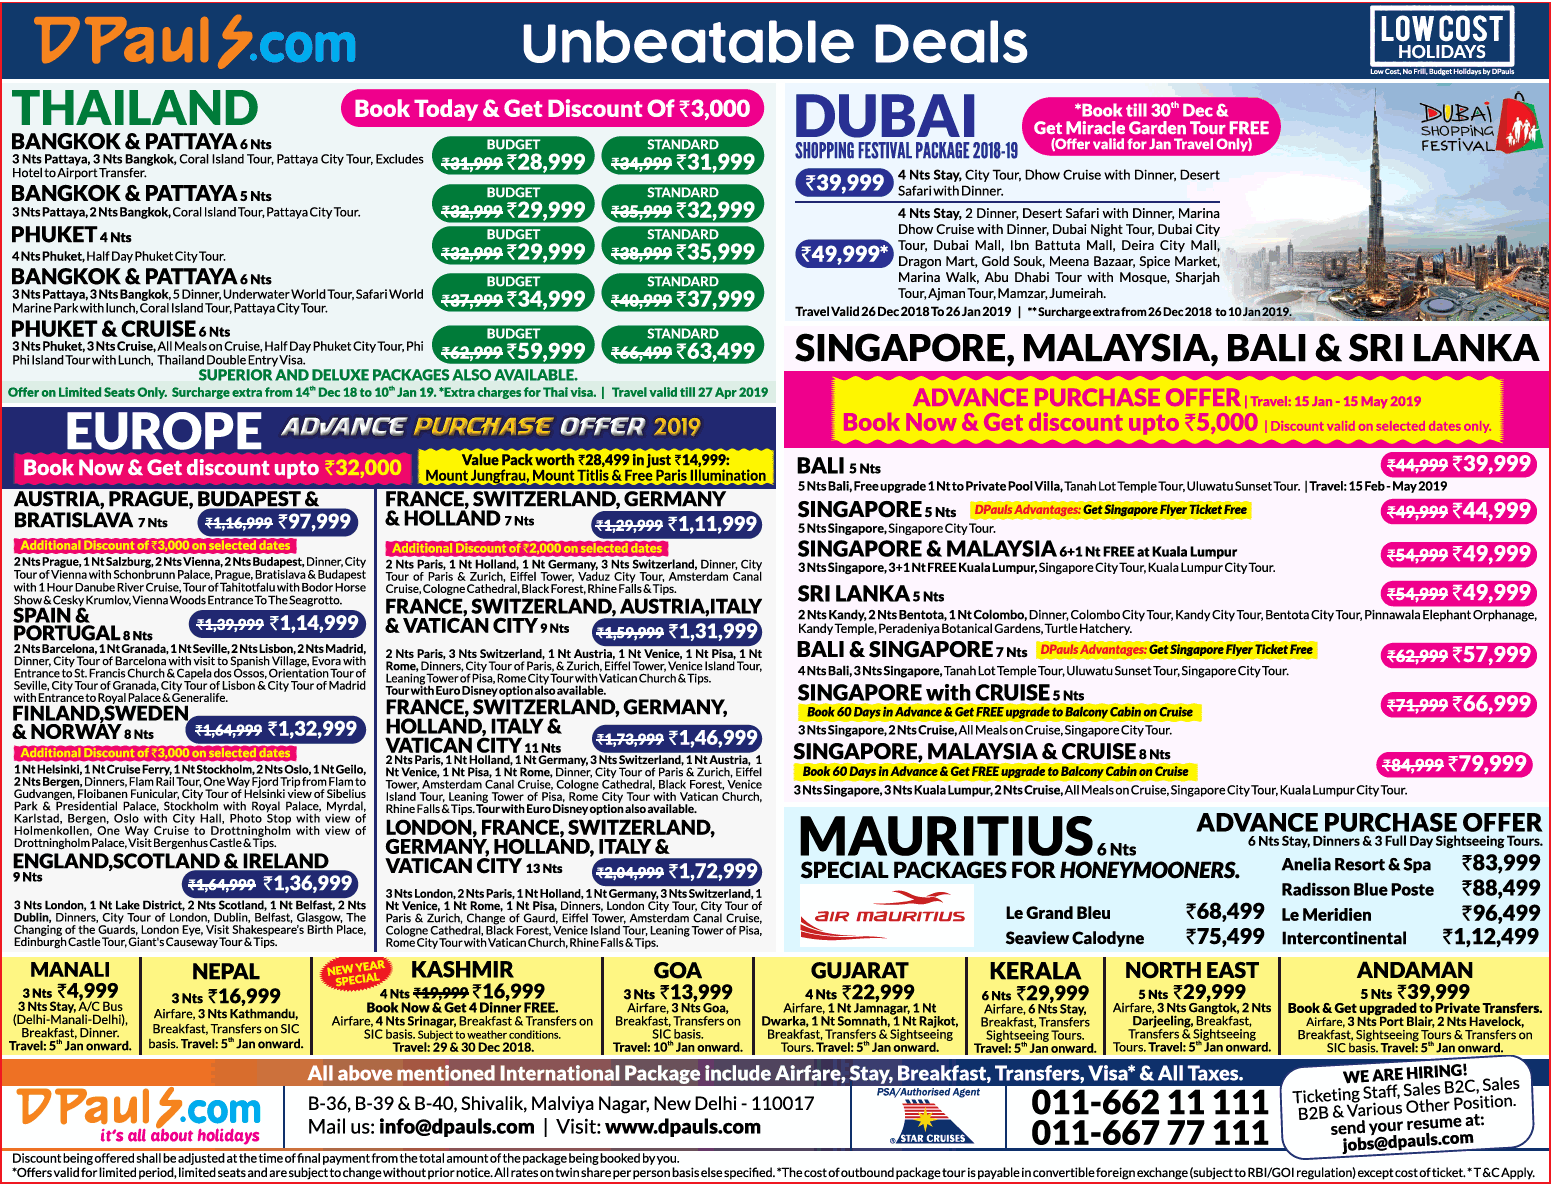 dpauls-com-unbeatable-deals-ad-delhi-times-21-12-2018.png